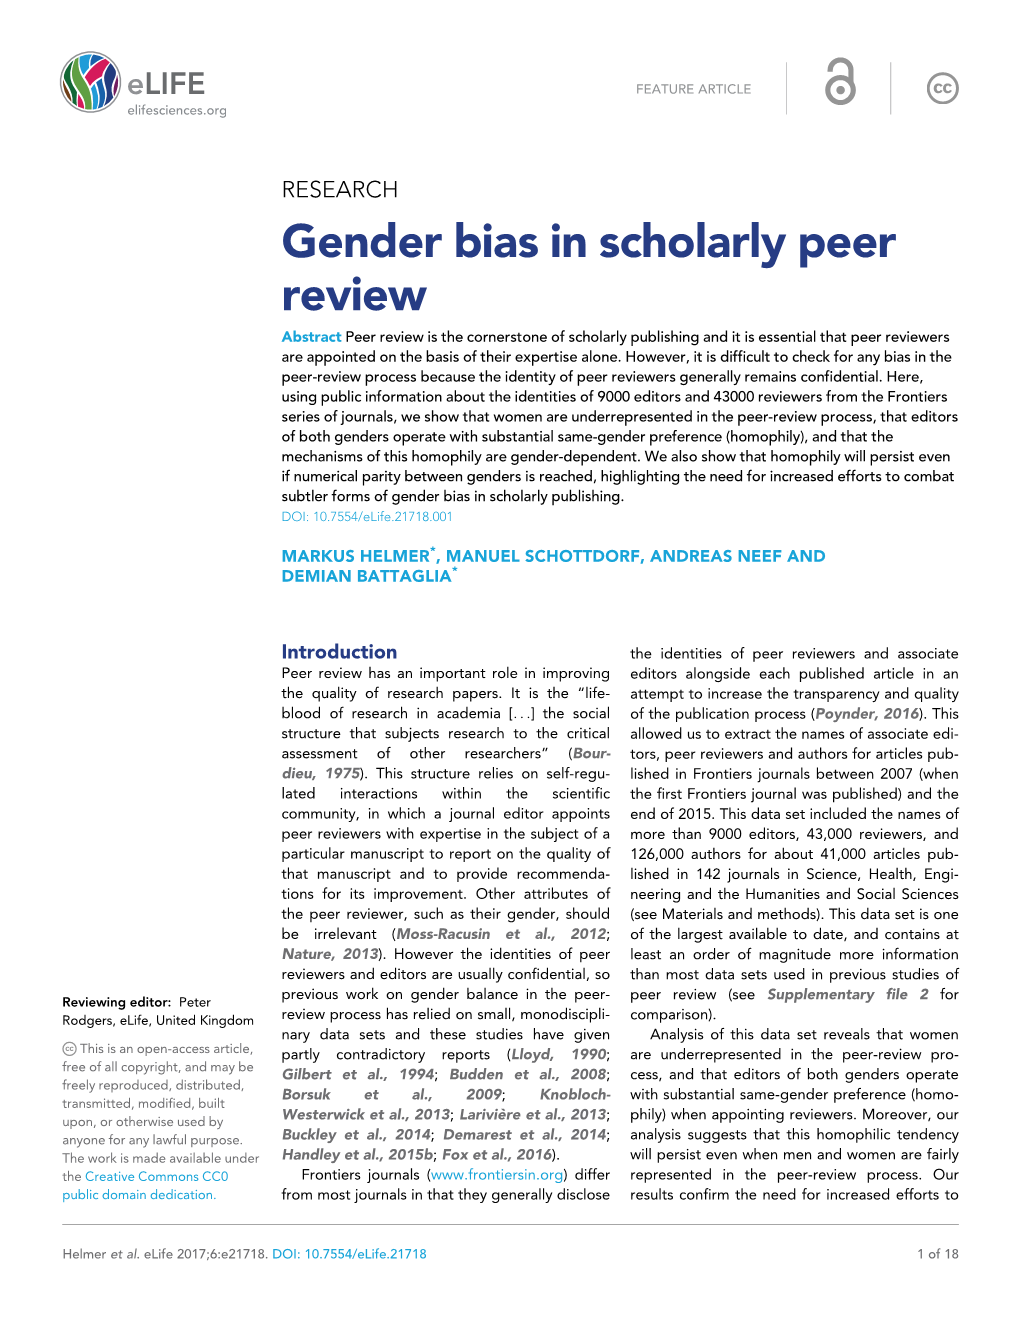 Gender Bias in Scholarly Peer Review